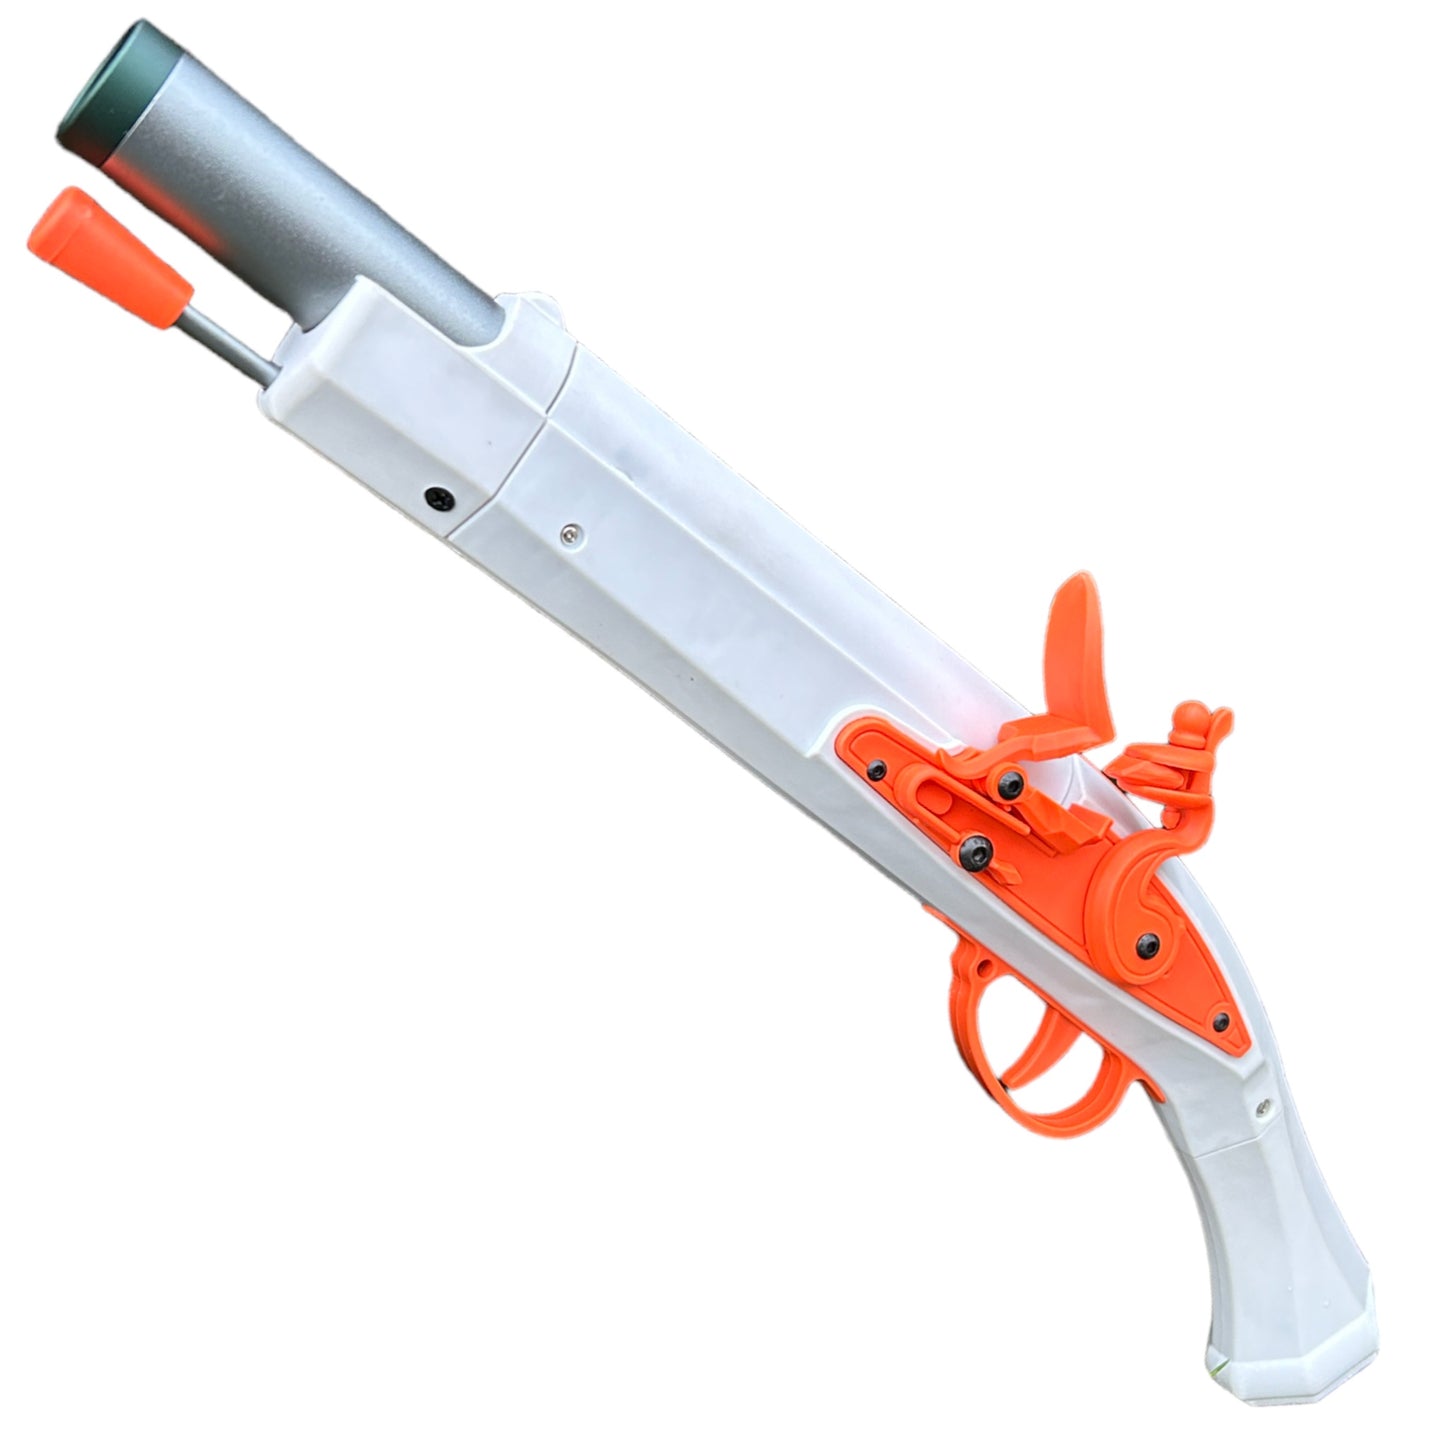 Flintlock Musket Toy Gun - Mechanical Parts Cosplay Prop